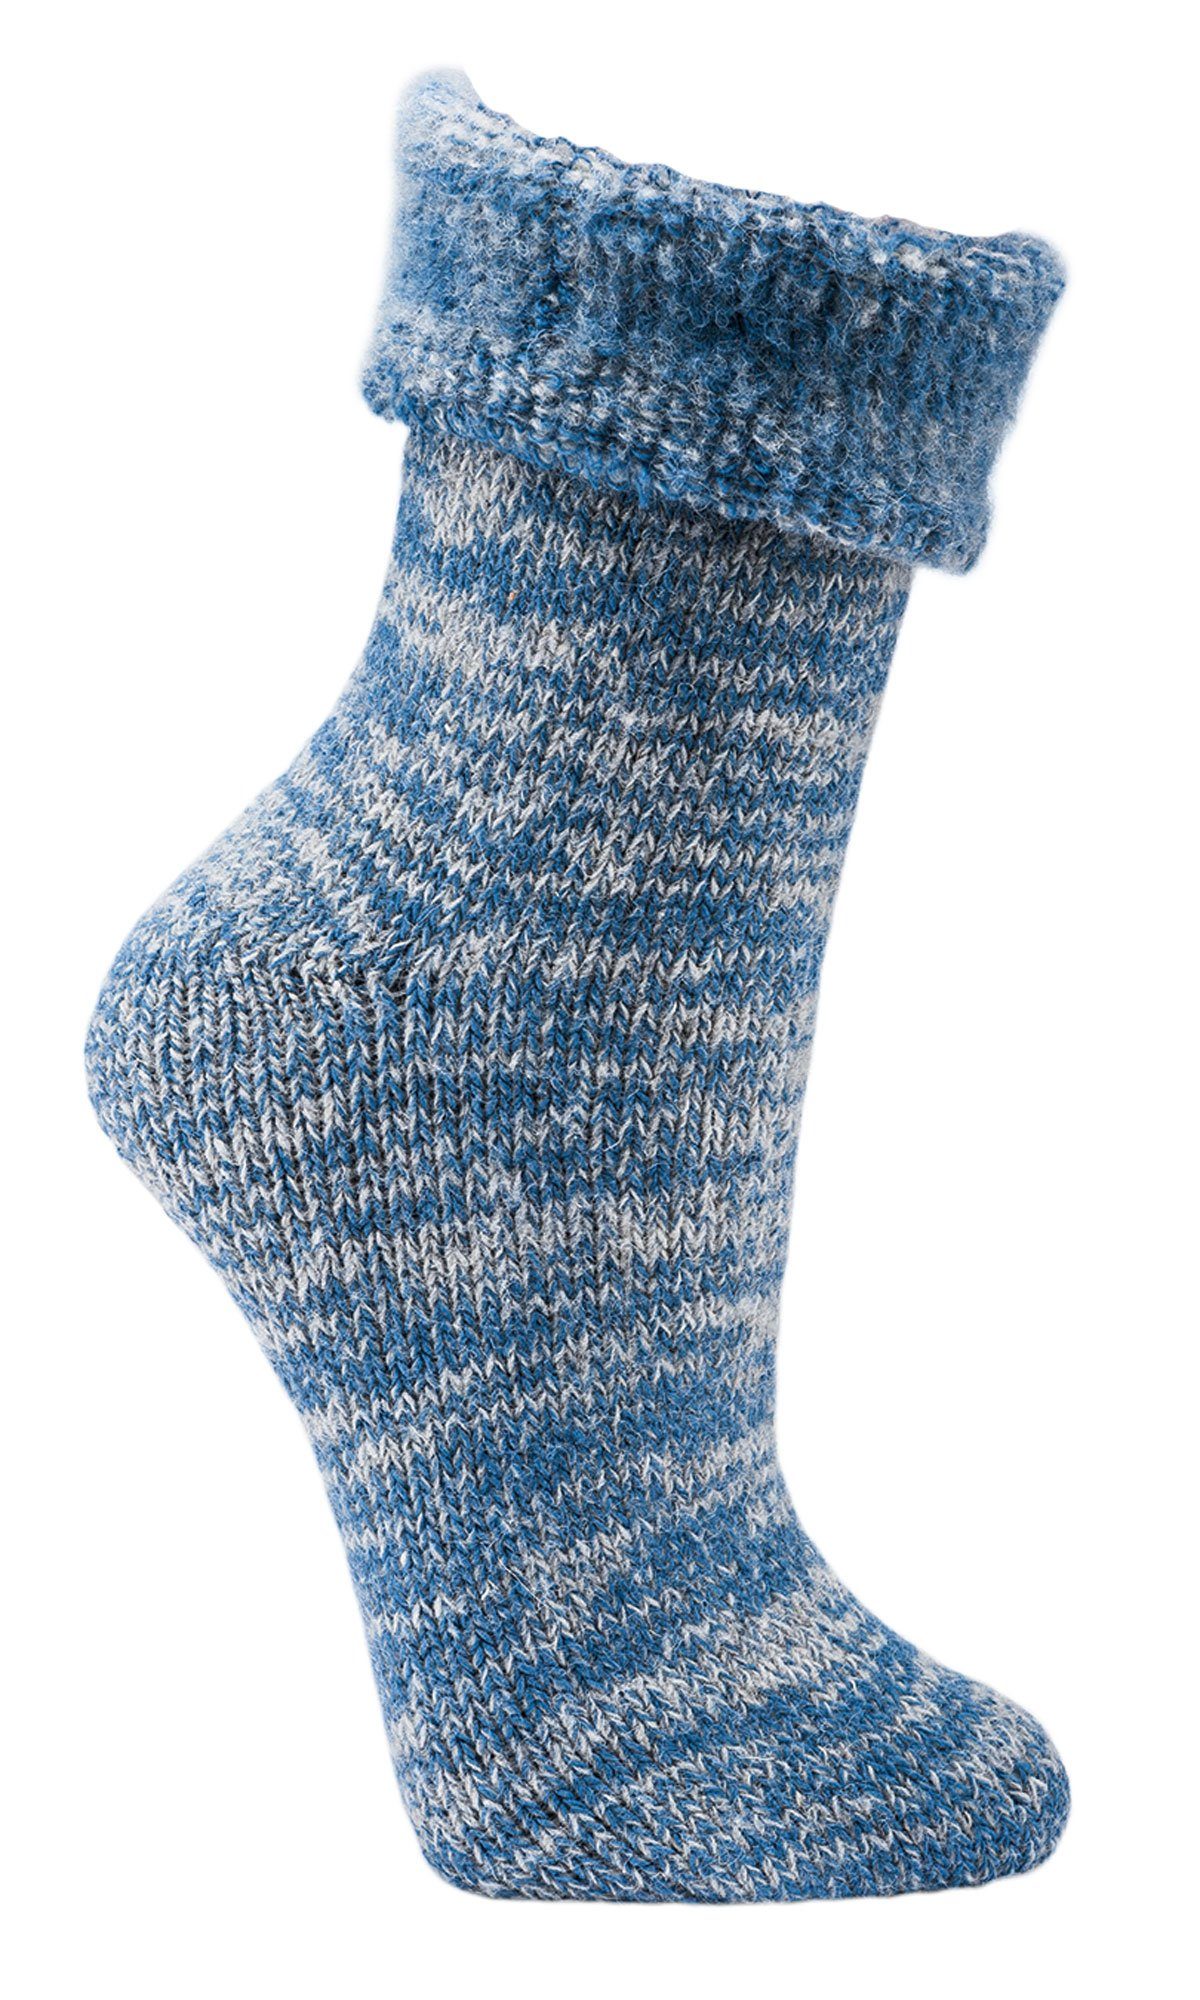 Wowerat Socken MEGA warme Socken 63% Wolle Thermosocken Homesocks (1 Paar) extra dick jeansmelange